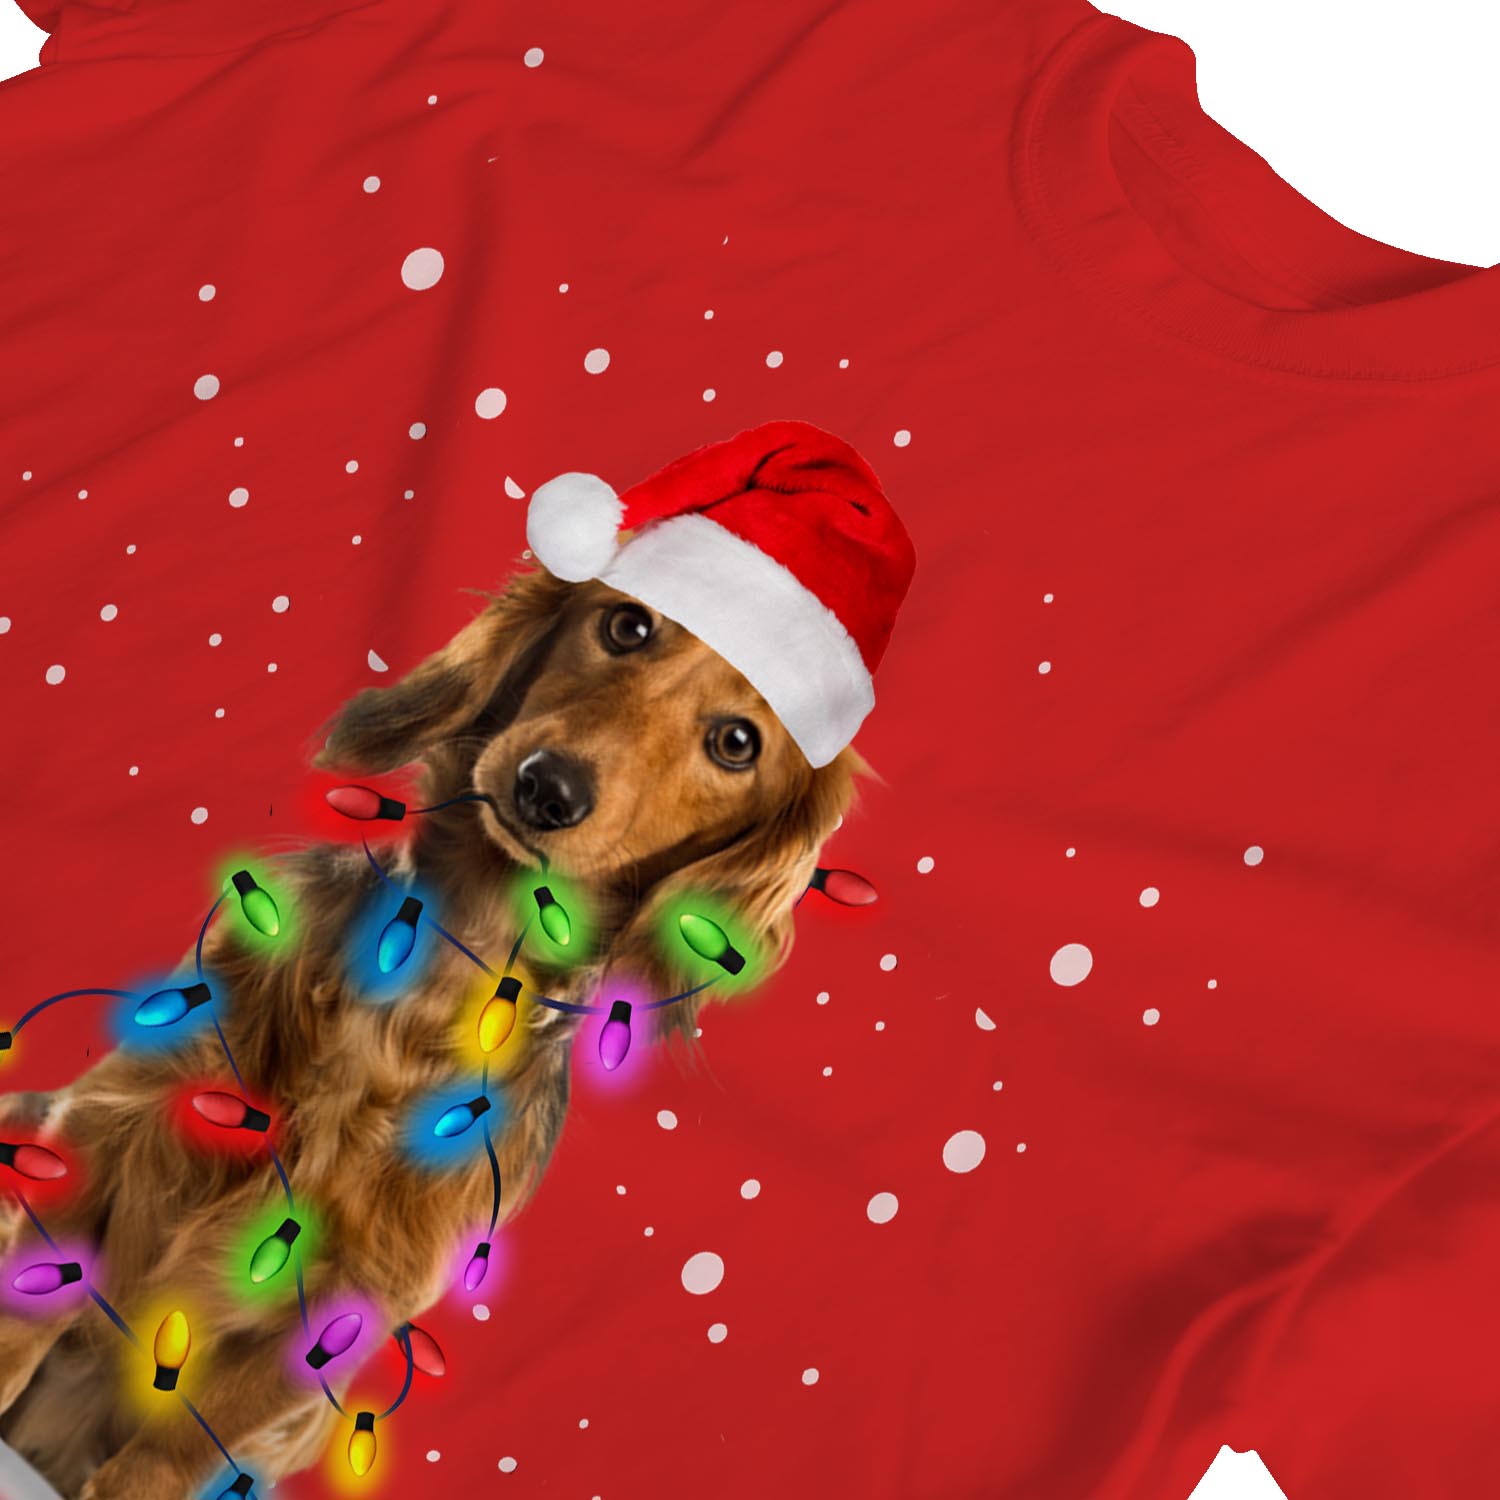 1Tee Perro Para hombre cubierto de luces de Navidad T-Shirt